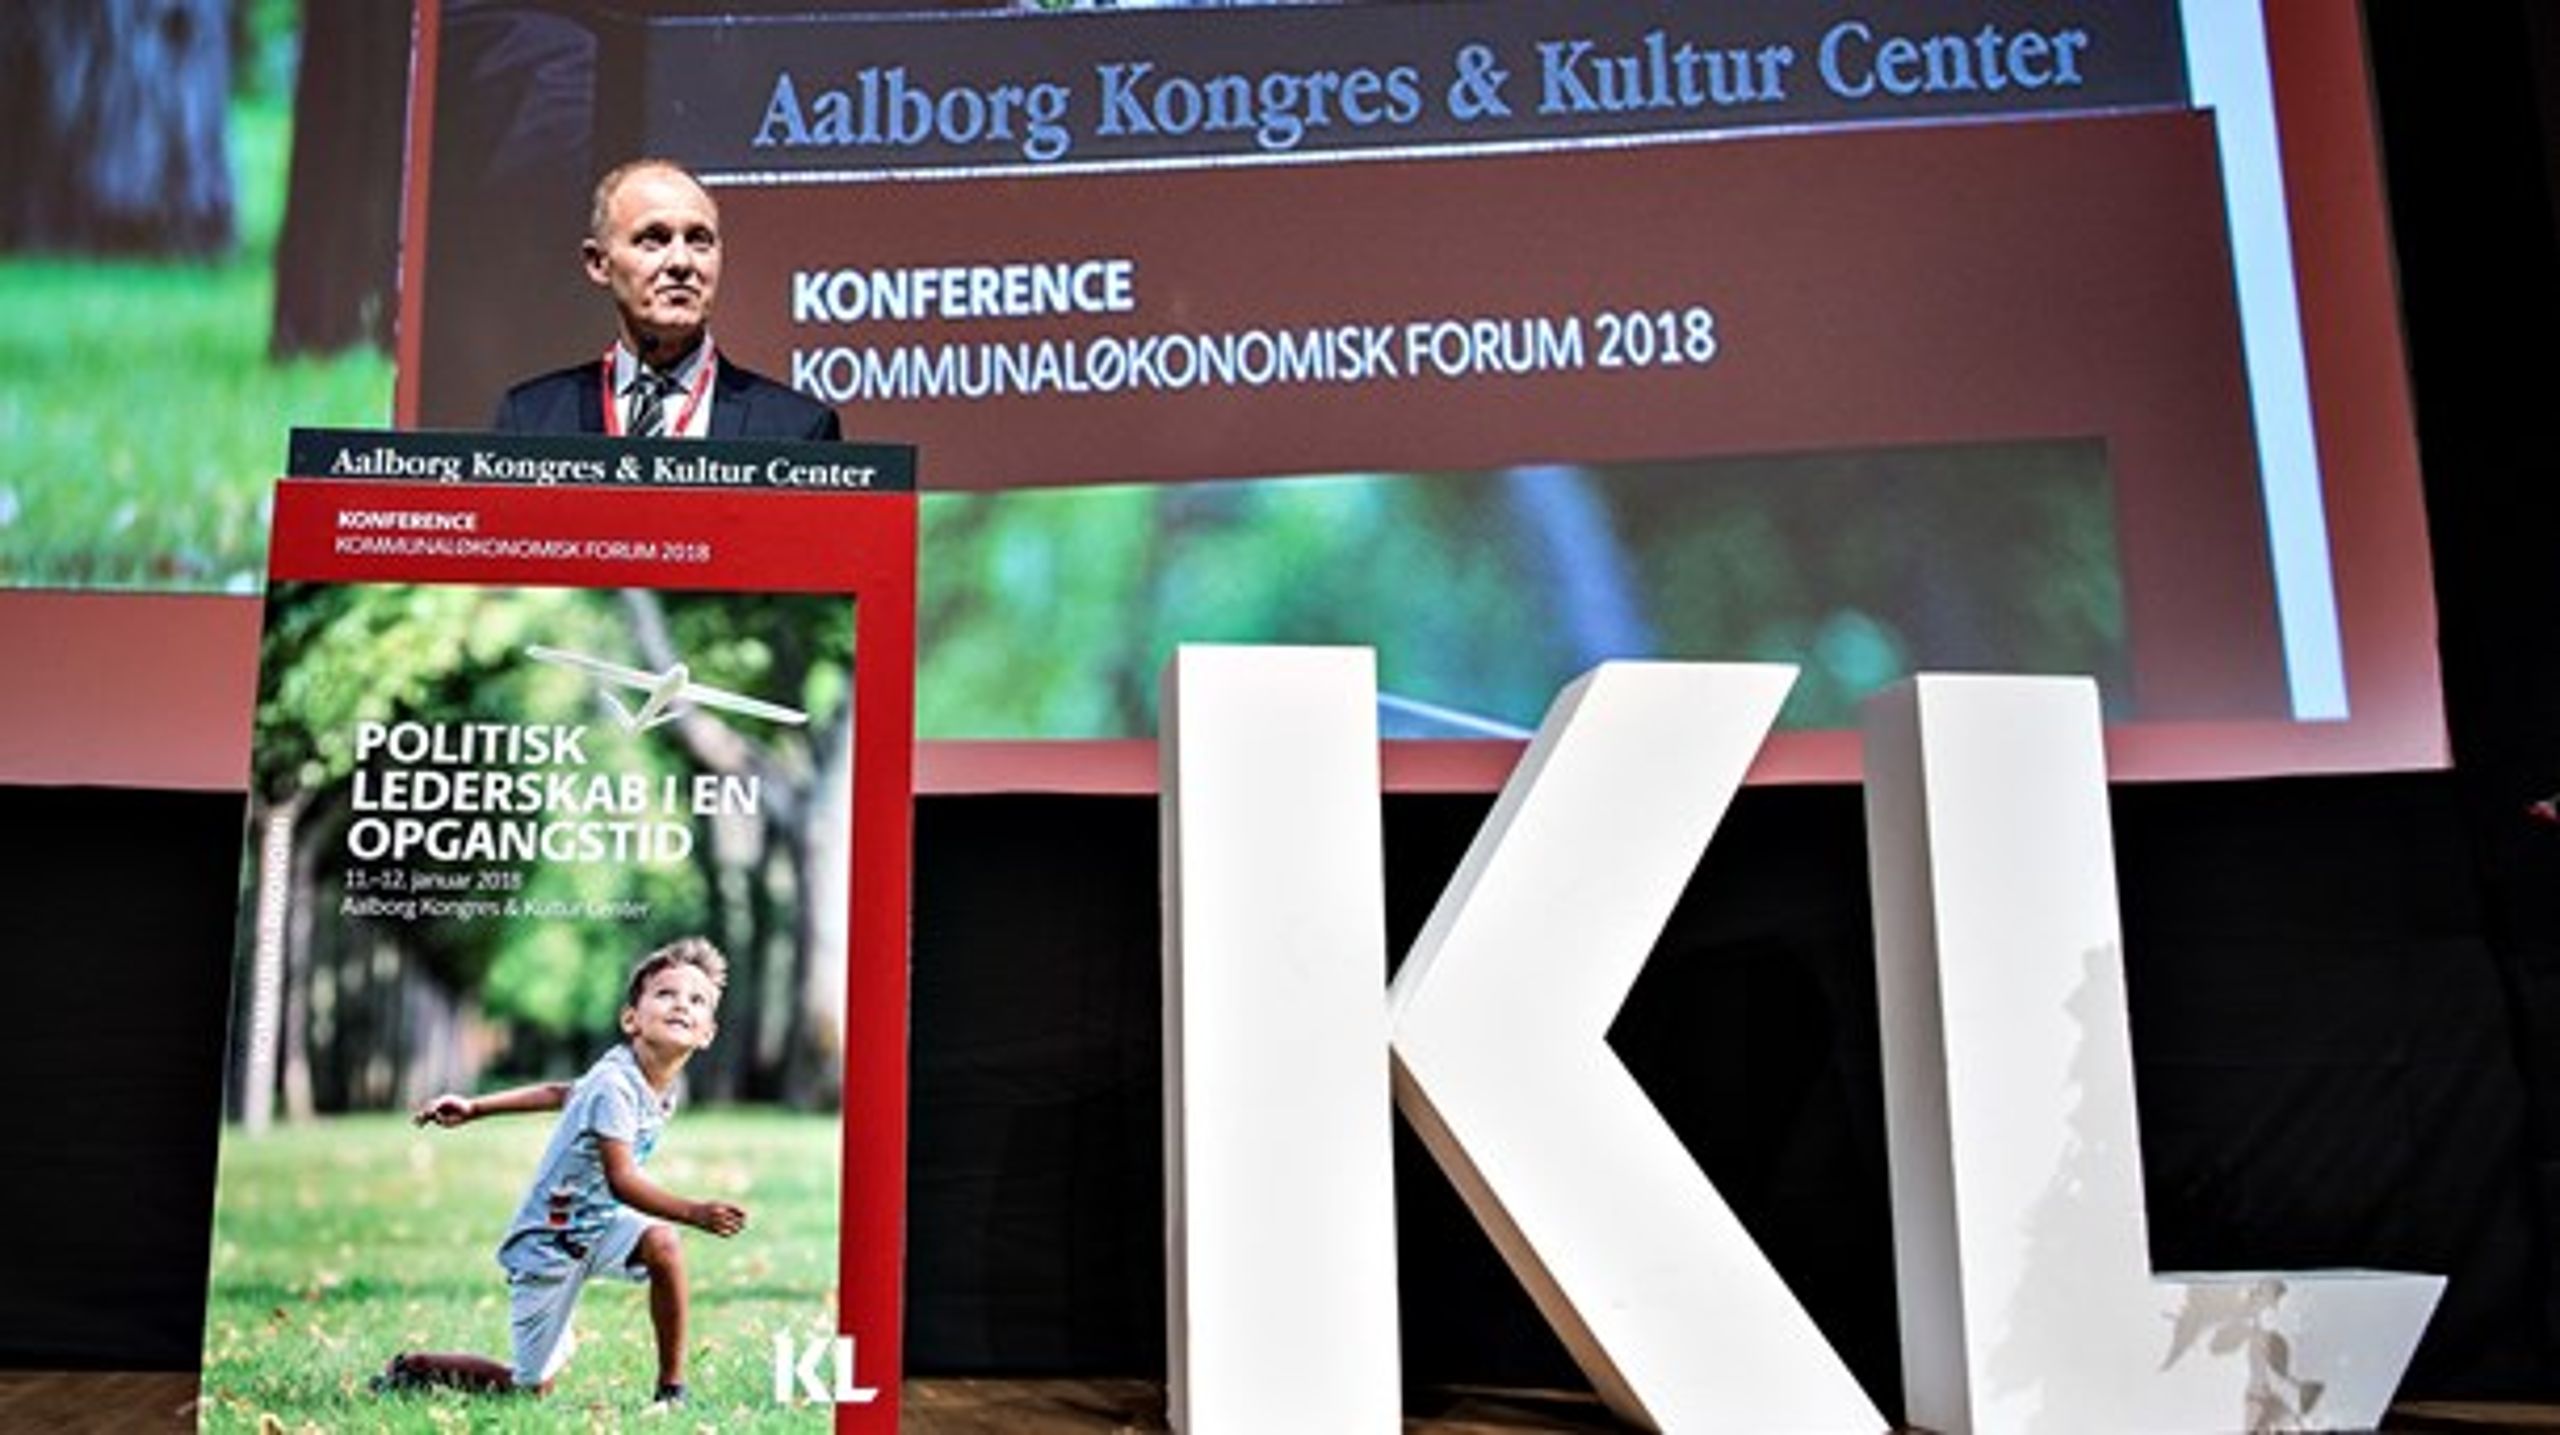 Kunst, kultur og idræt skal højere op på dagsordenen i KL-regi, mener Niko Grünfeld (ALT) og&nbsp;Jonas Bjørn Jensen (S).